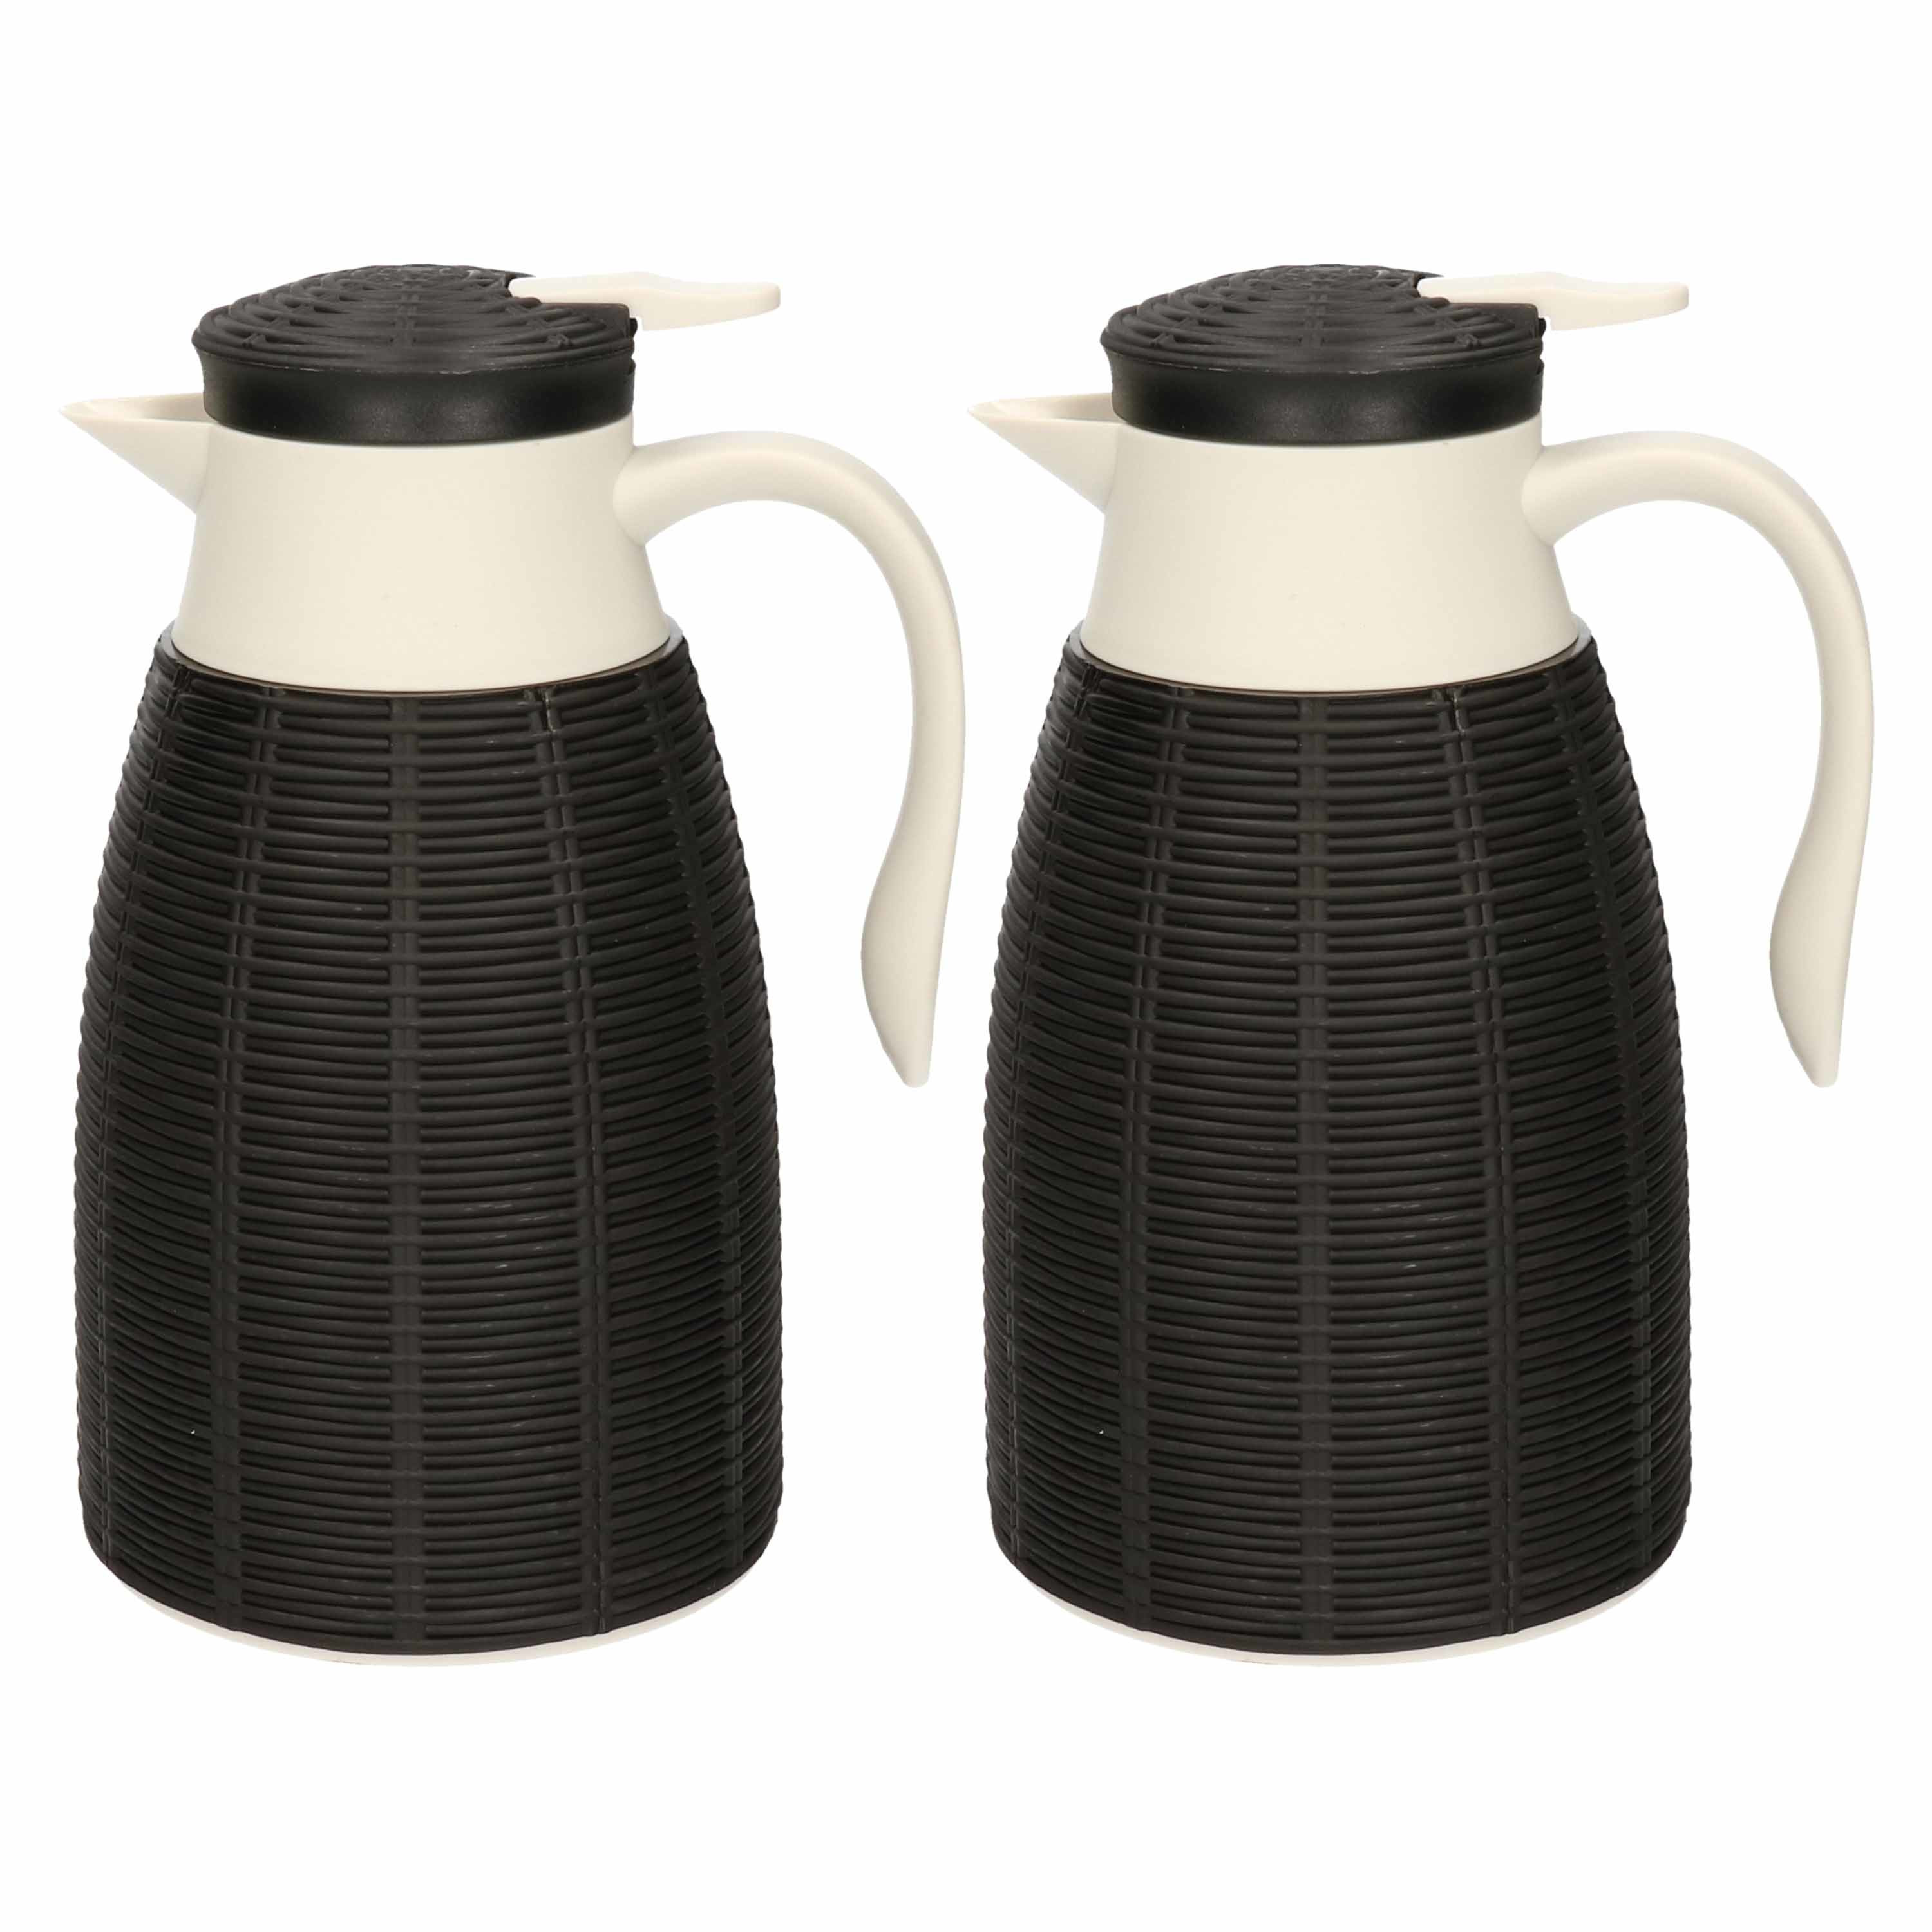 2x Zwarte rotan koffiekan/isoleerkan 1 liter - Koffiekannen/theekannen/isoleerkannen/thermoskannen